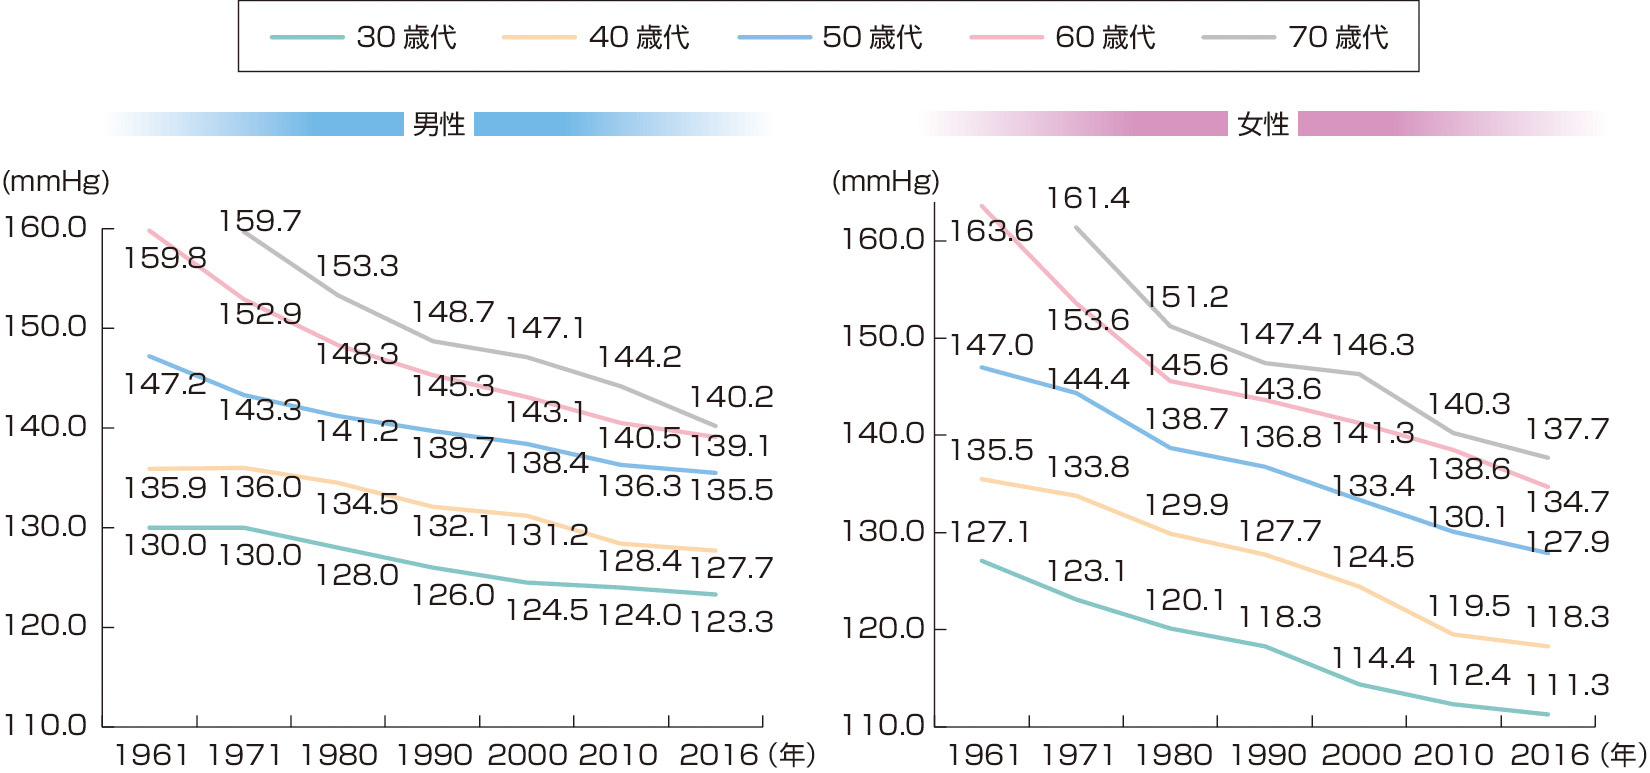 ⓔ図9-2-3　性・年齢階級別の収縮期血圧平均値 (mmHg) の年次推移 (1961～2016年) (第1次成人病基礎調査，第2次成人病基礎調査，第3次循環器疾患基礎調査 (NIPPON DATA80)，第4次循環器疾患基礎調査 (NIPPON DATA90)，第5次循環器疾患基礎調査，平成22年国民健康・栄養調査，平成28年国民健康・栄養調査) (日本高血圧学会高血圧治療ガイドライン作成委員会：高血圧治療ガイドライン2019，日本高血圧学会，2019) 国民の収縮期血圧平均値は過去55年間で大きく低下した．収縮期血圧平均値は男女とも各年齢階級において10～20 mmHgという大きな低下を示している． 血圧値は1回目測定値を使用．